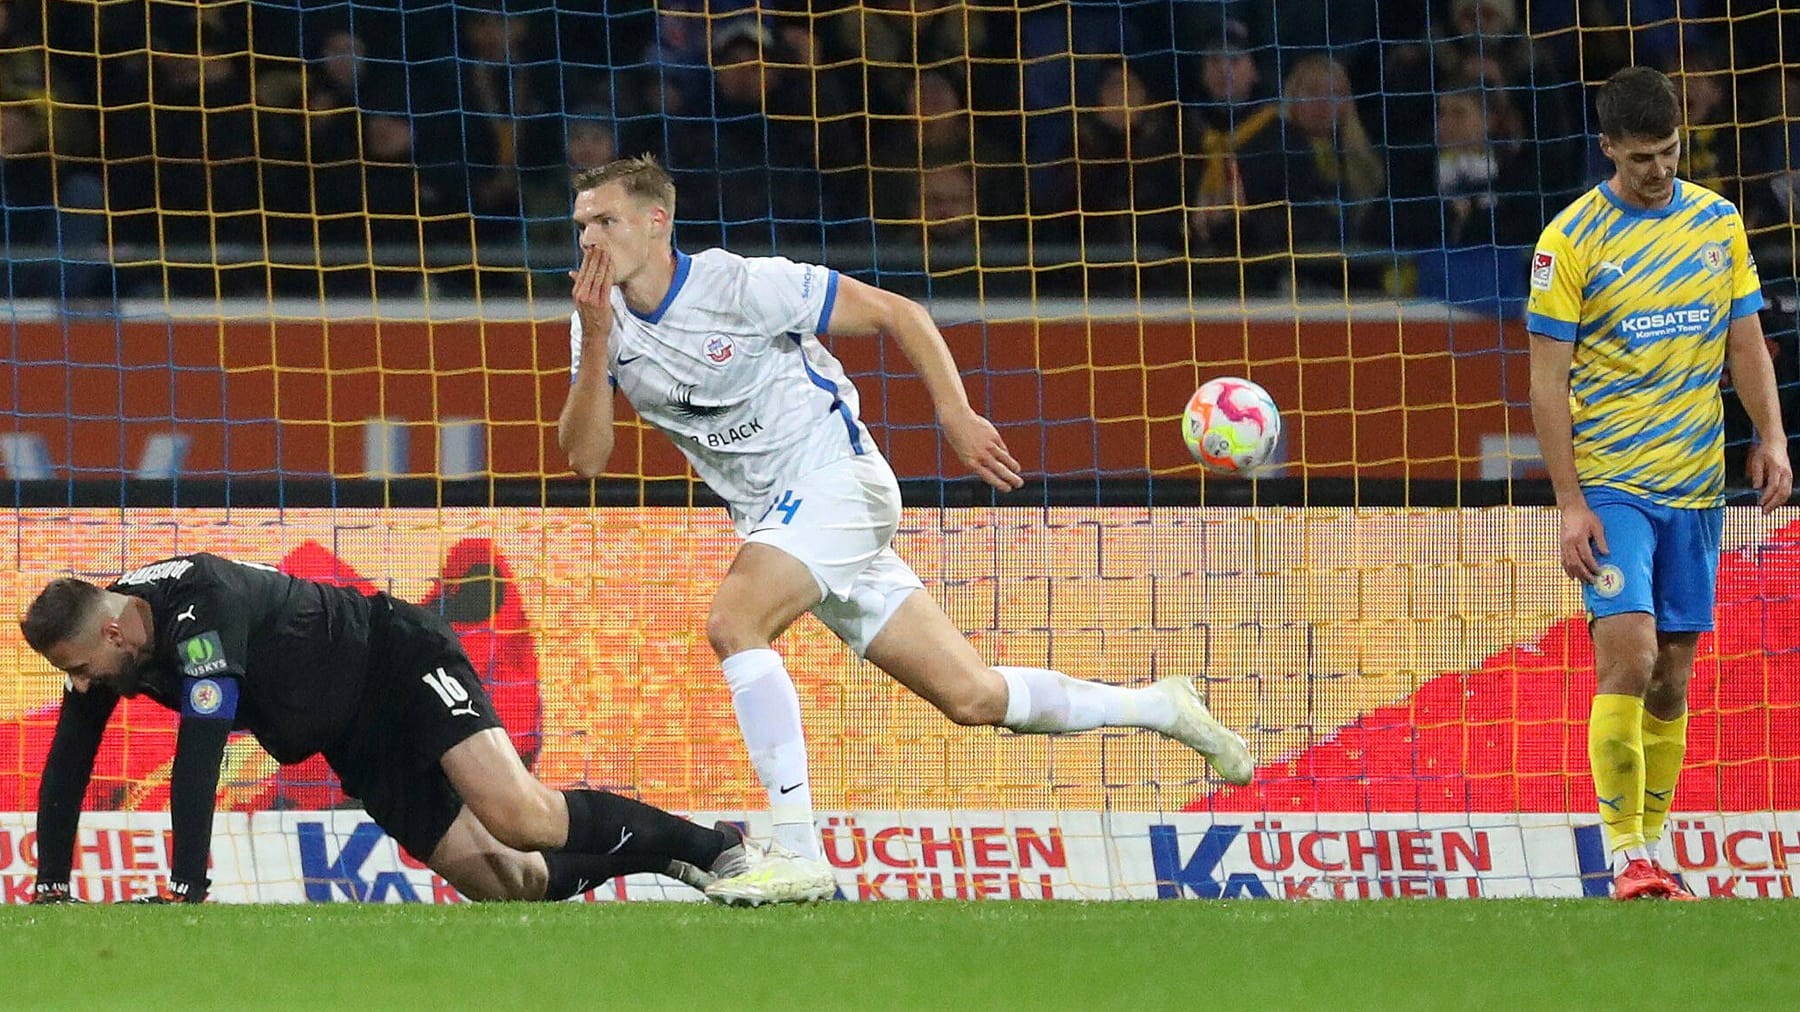 Kemenangan pertama untuk pelatih baru Glöckner – Rostock mengalahkan Braunschweig